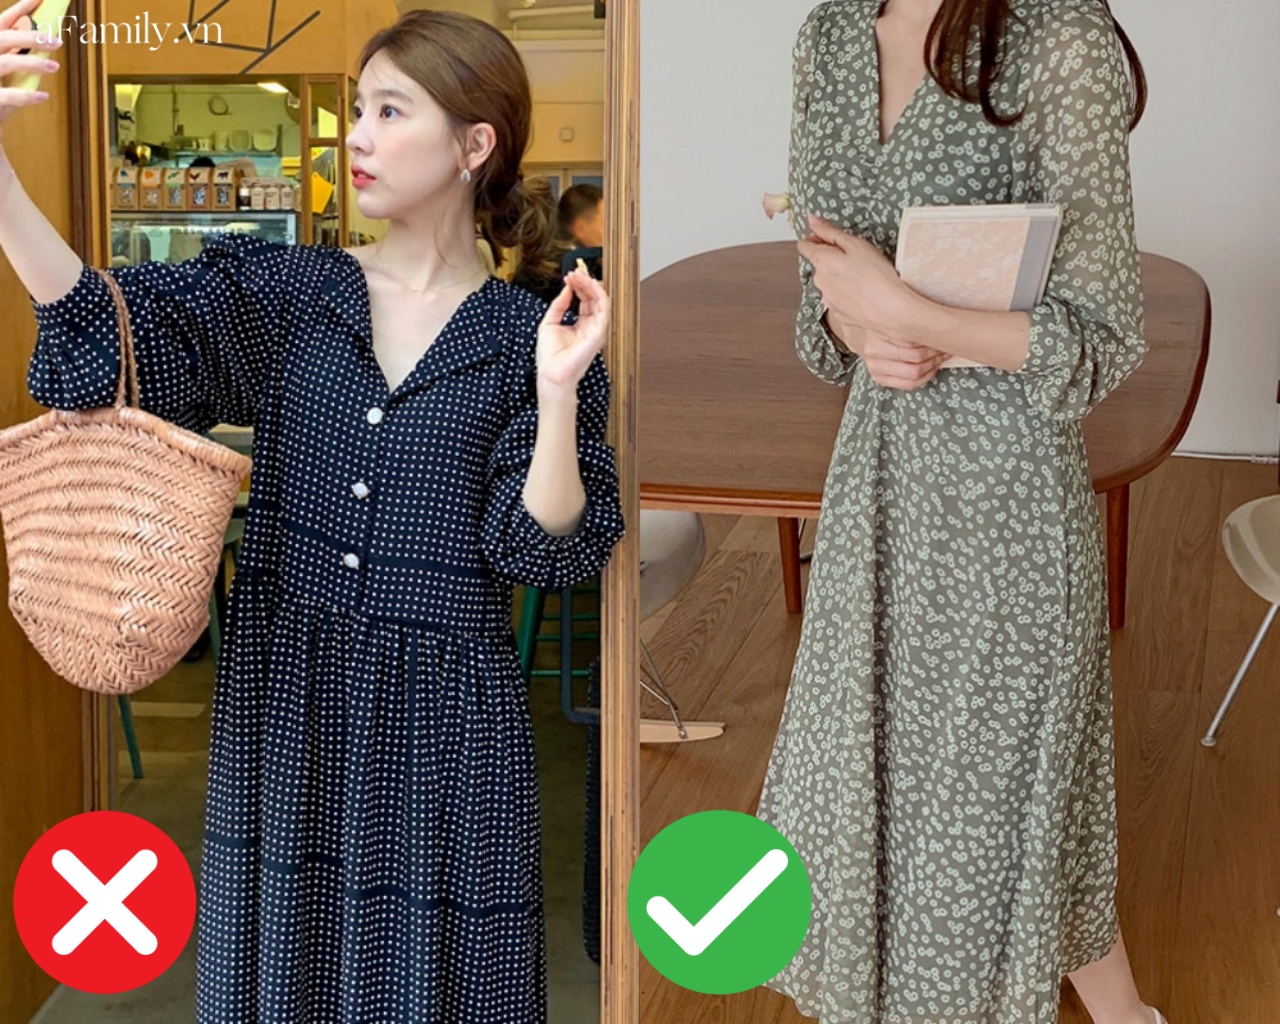 5 kiểu váy tưởng sẽ khiến các chị em trông mảnh mai hơn nhưng thực tế lại hoàn toàn ngược lại - Ảnh 3.